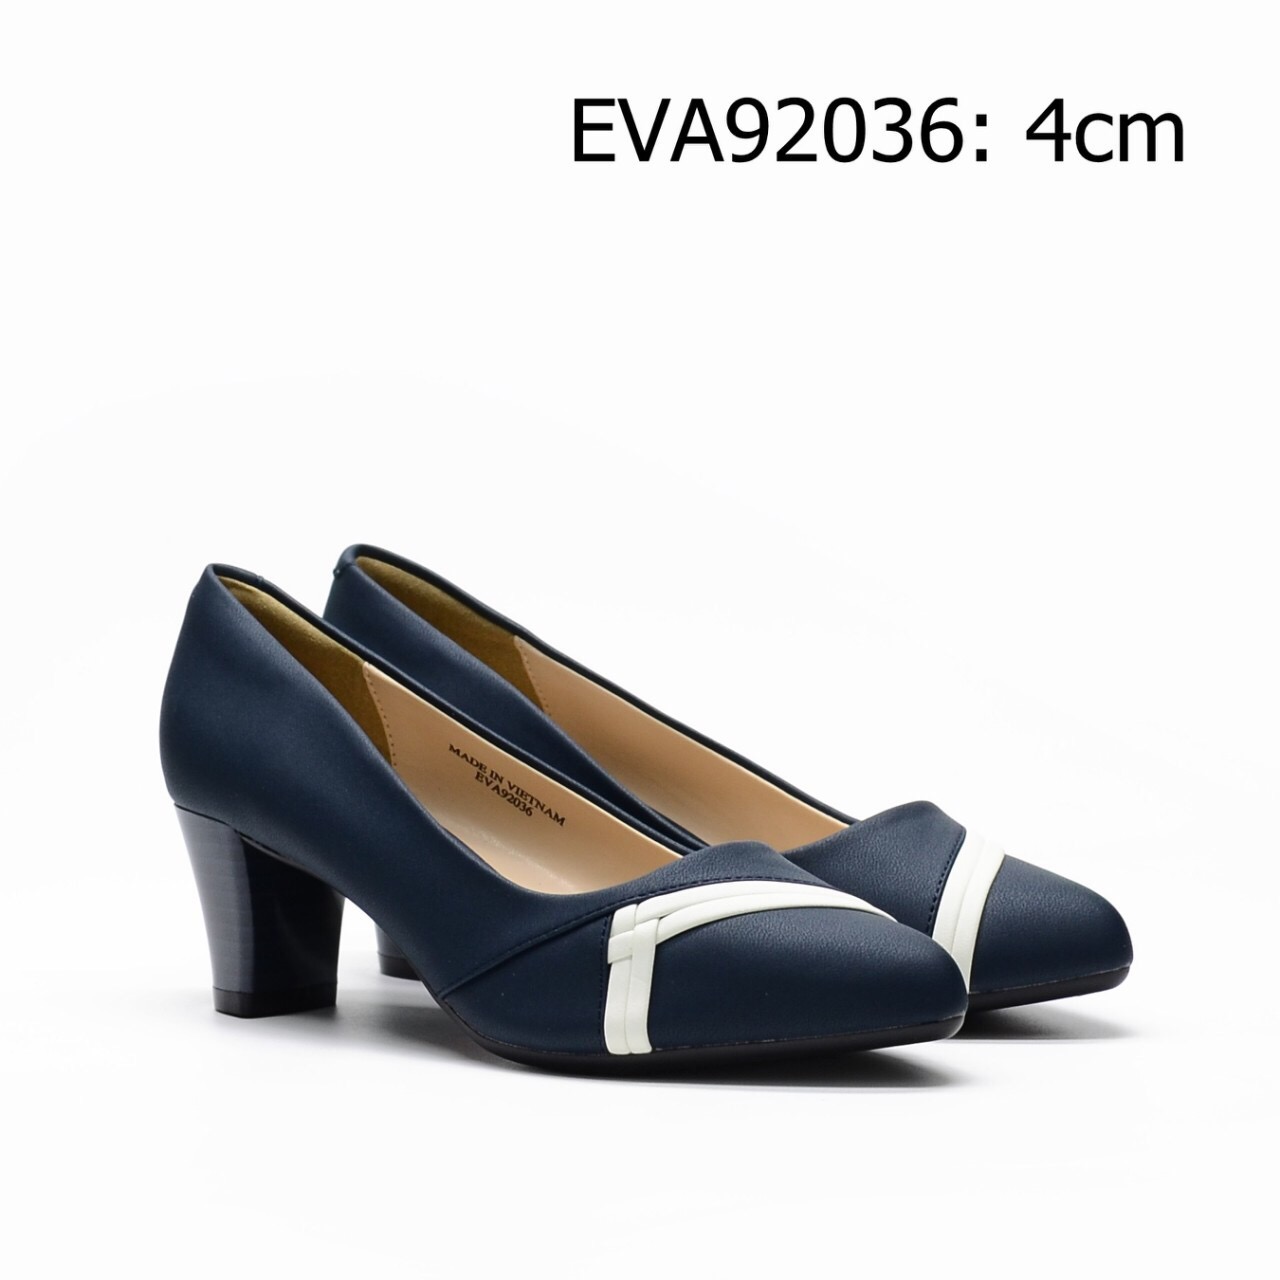 Giày công sở EVA92036 kiểu dáng mũi tròn phối họa tiết mới nổi bật tạo nét đẹp thanh lịch, duyên dáng